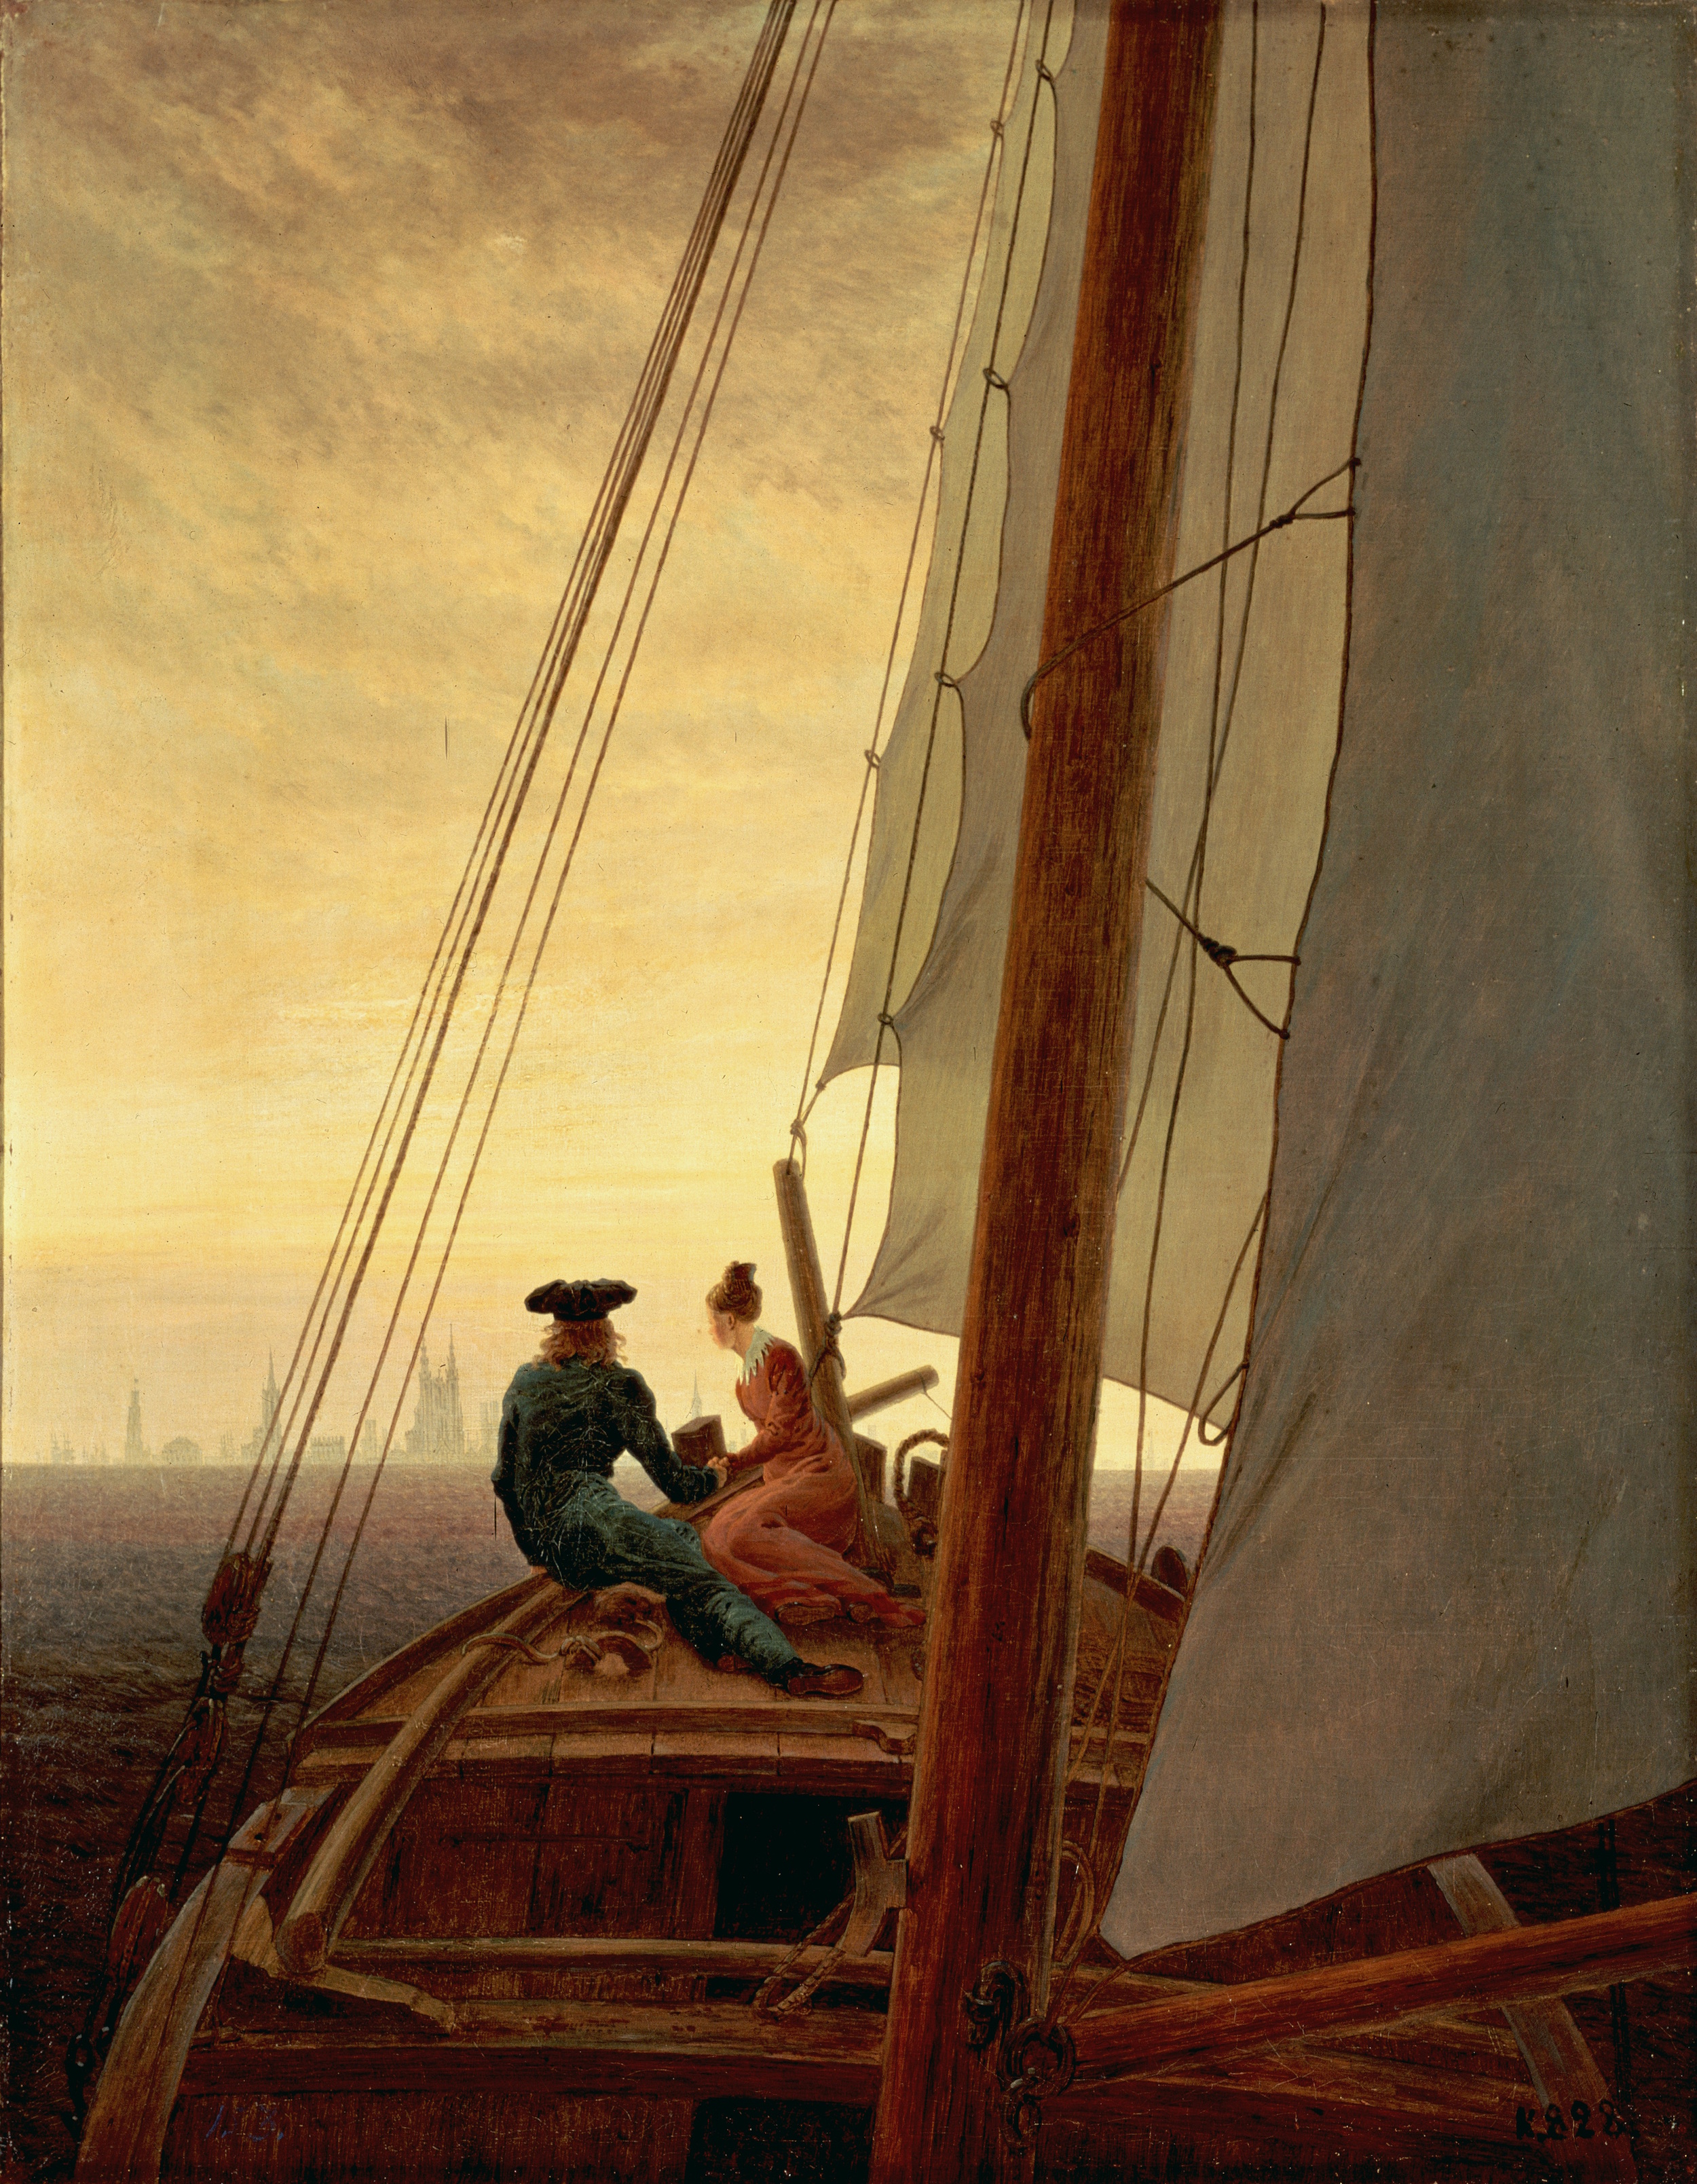 在帆船上 by 卡斯帕 弗里德里希 - 1819 - 71 x 56 厘米 艾尔米塔什博物馆